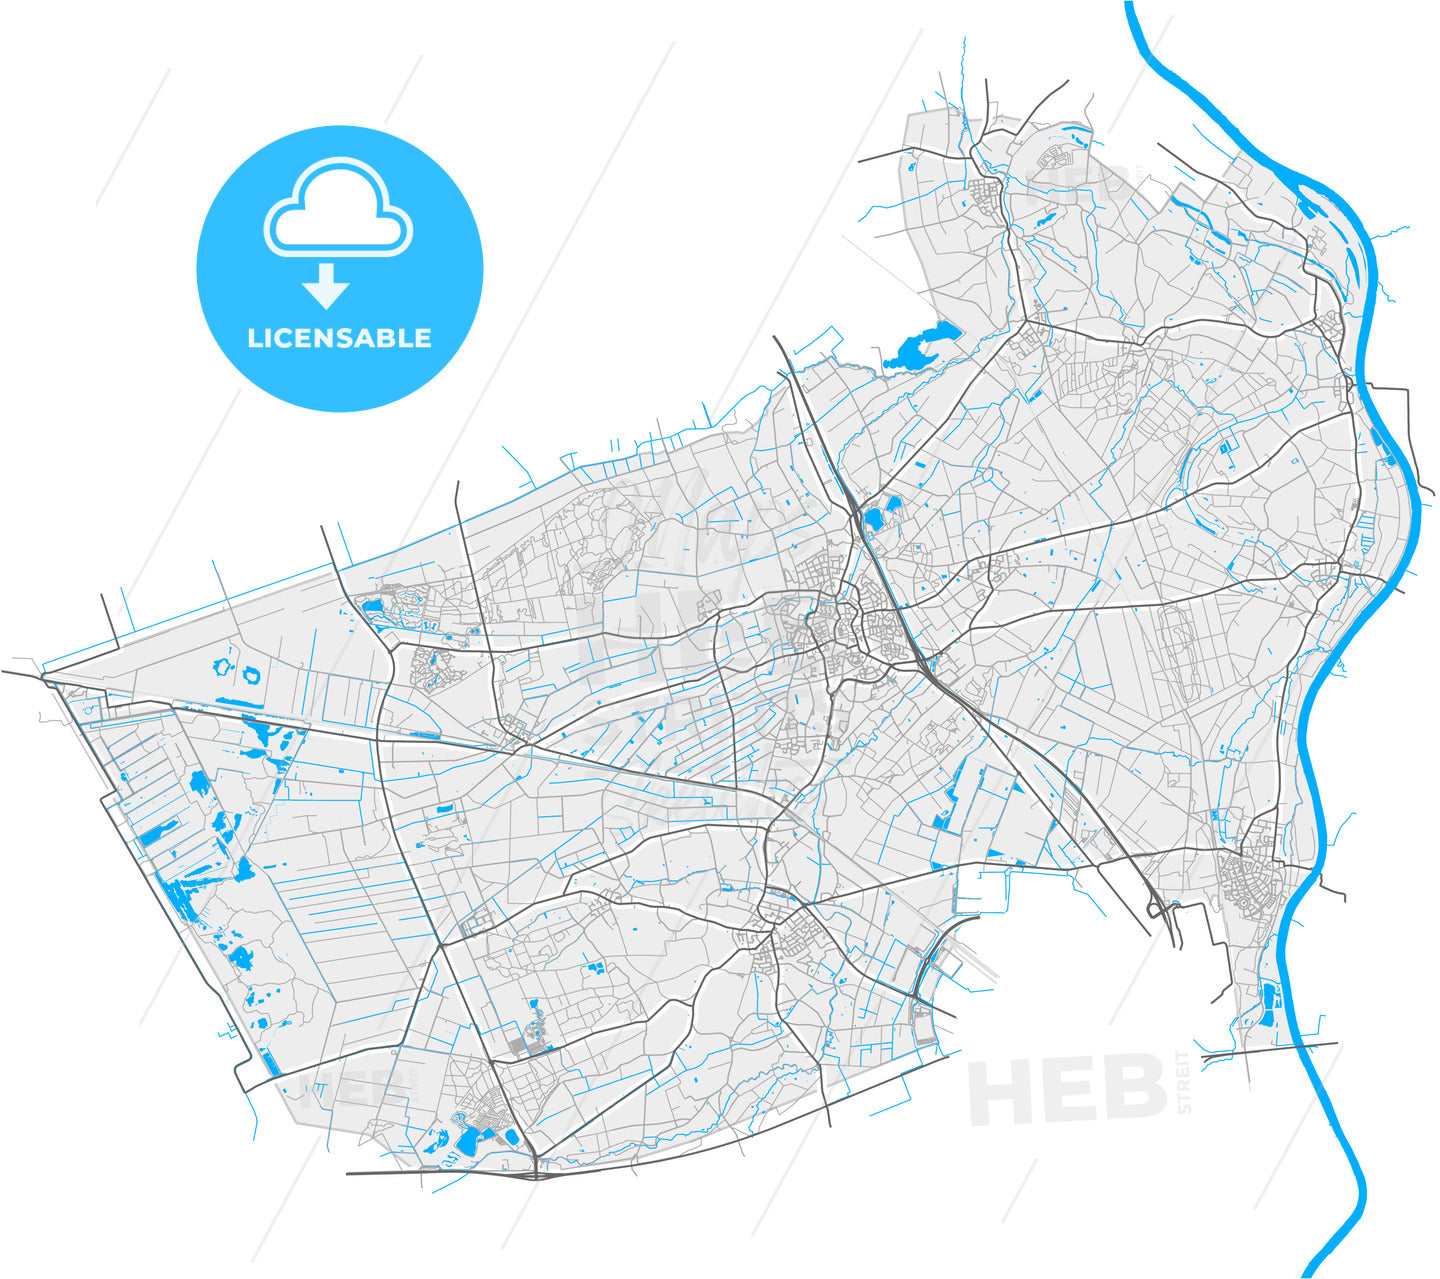 Horst aan de Maas, Limburg, Netherlands, high quality vector map